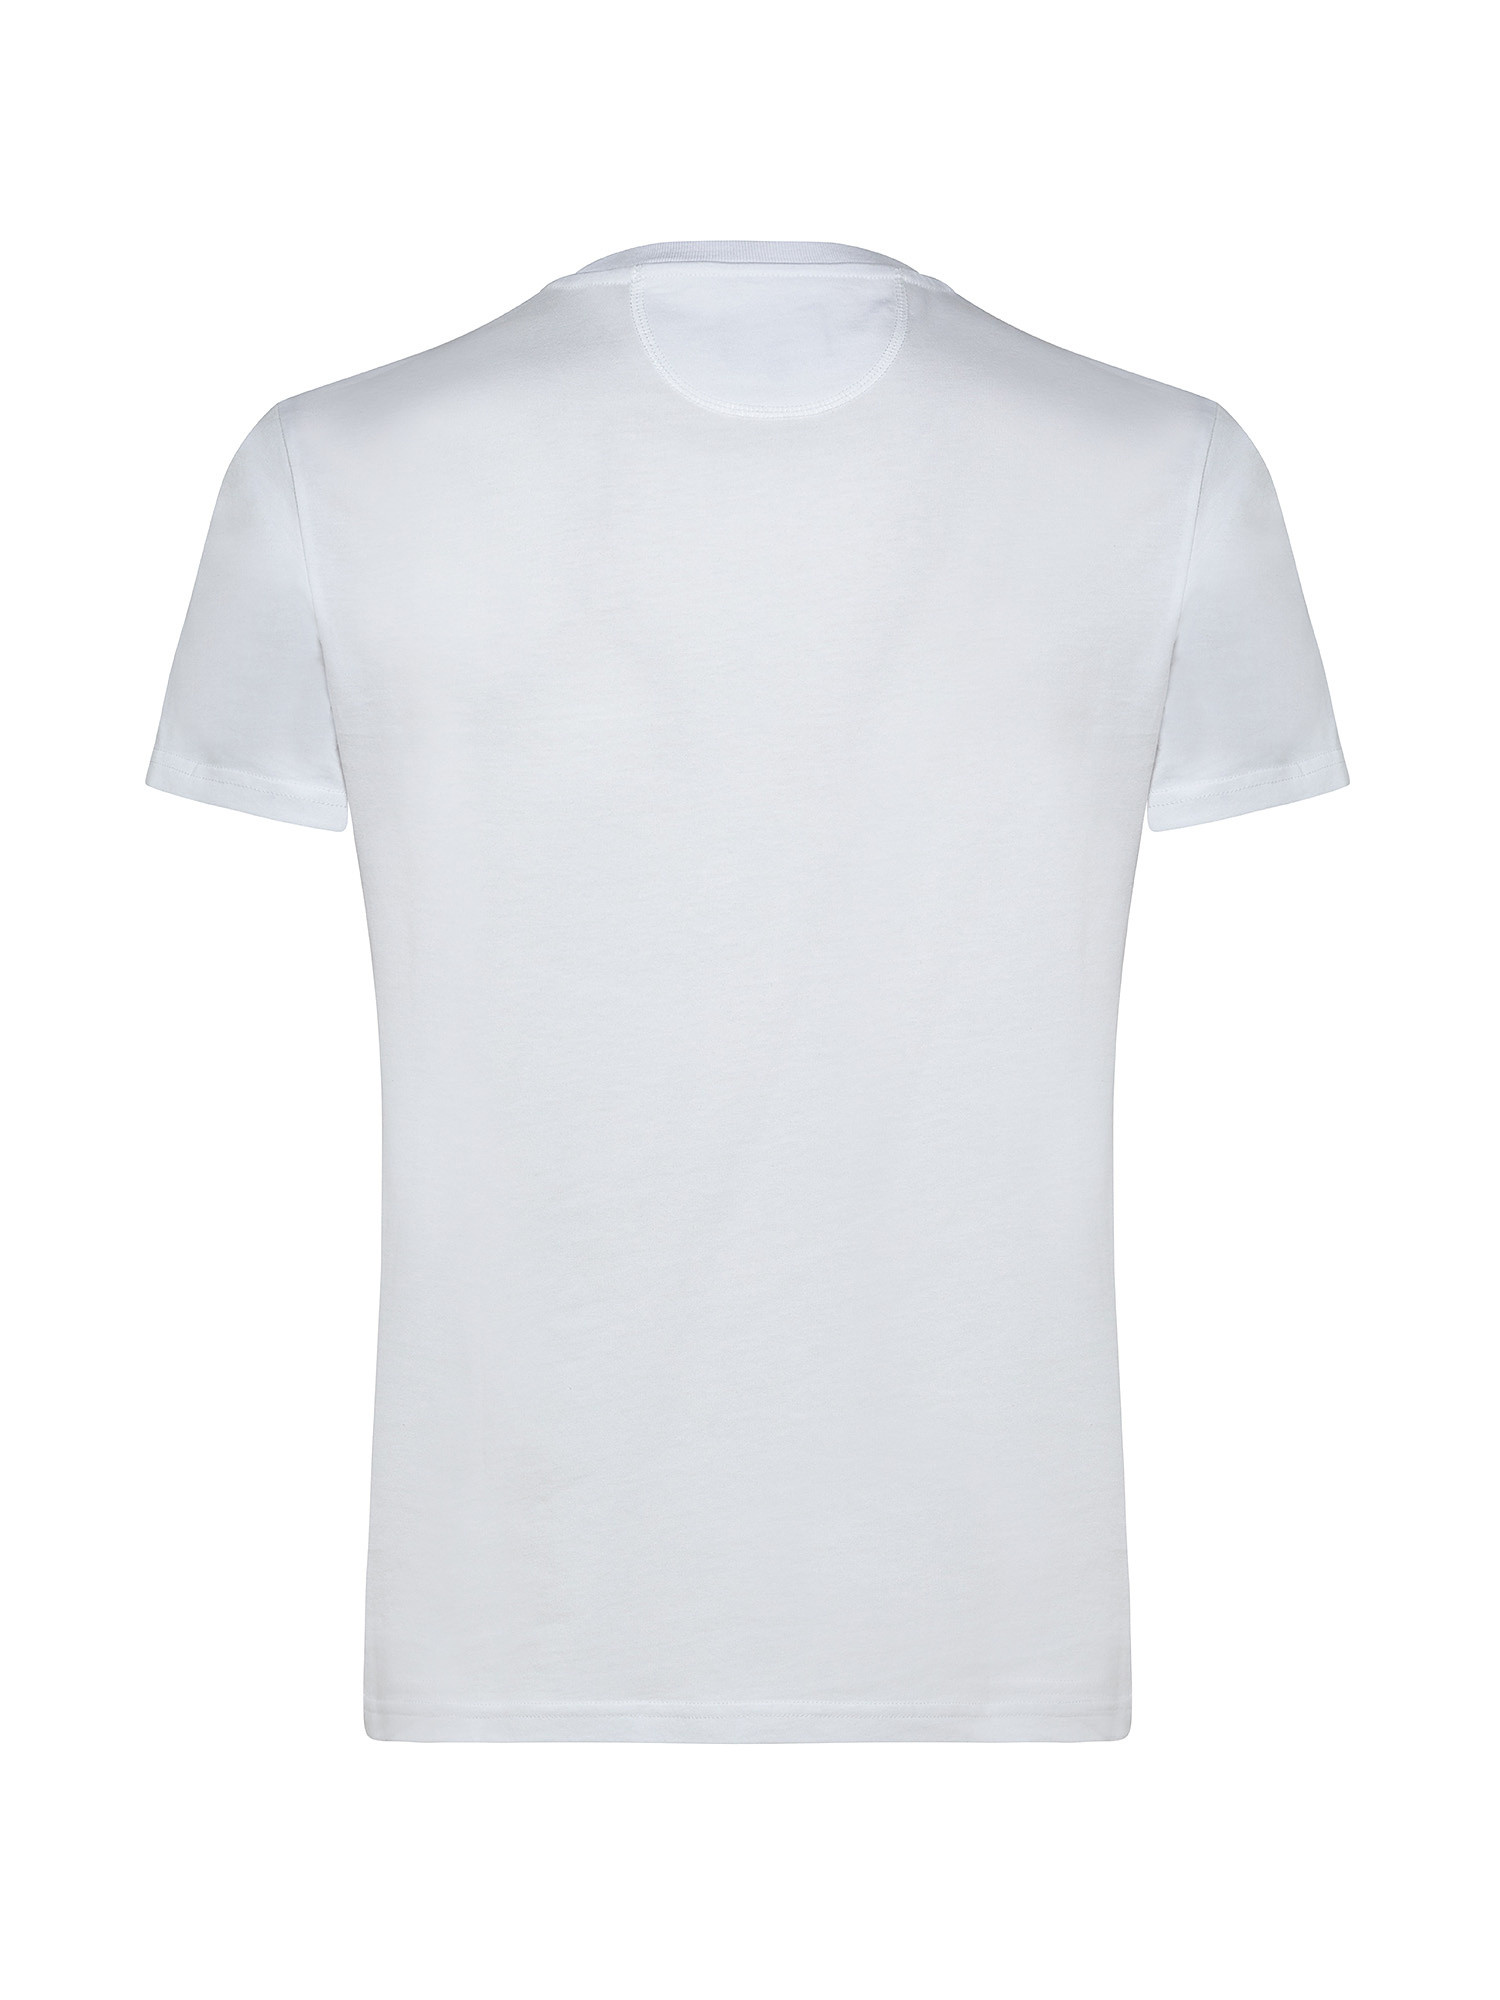 T-shirt da uomo a maniche corte in cotone regular fit, Bianco, large image number 1